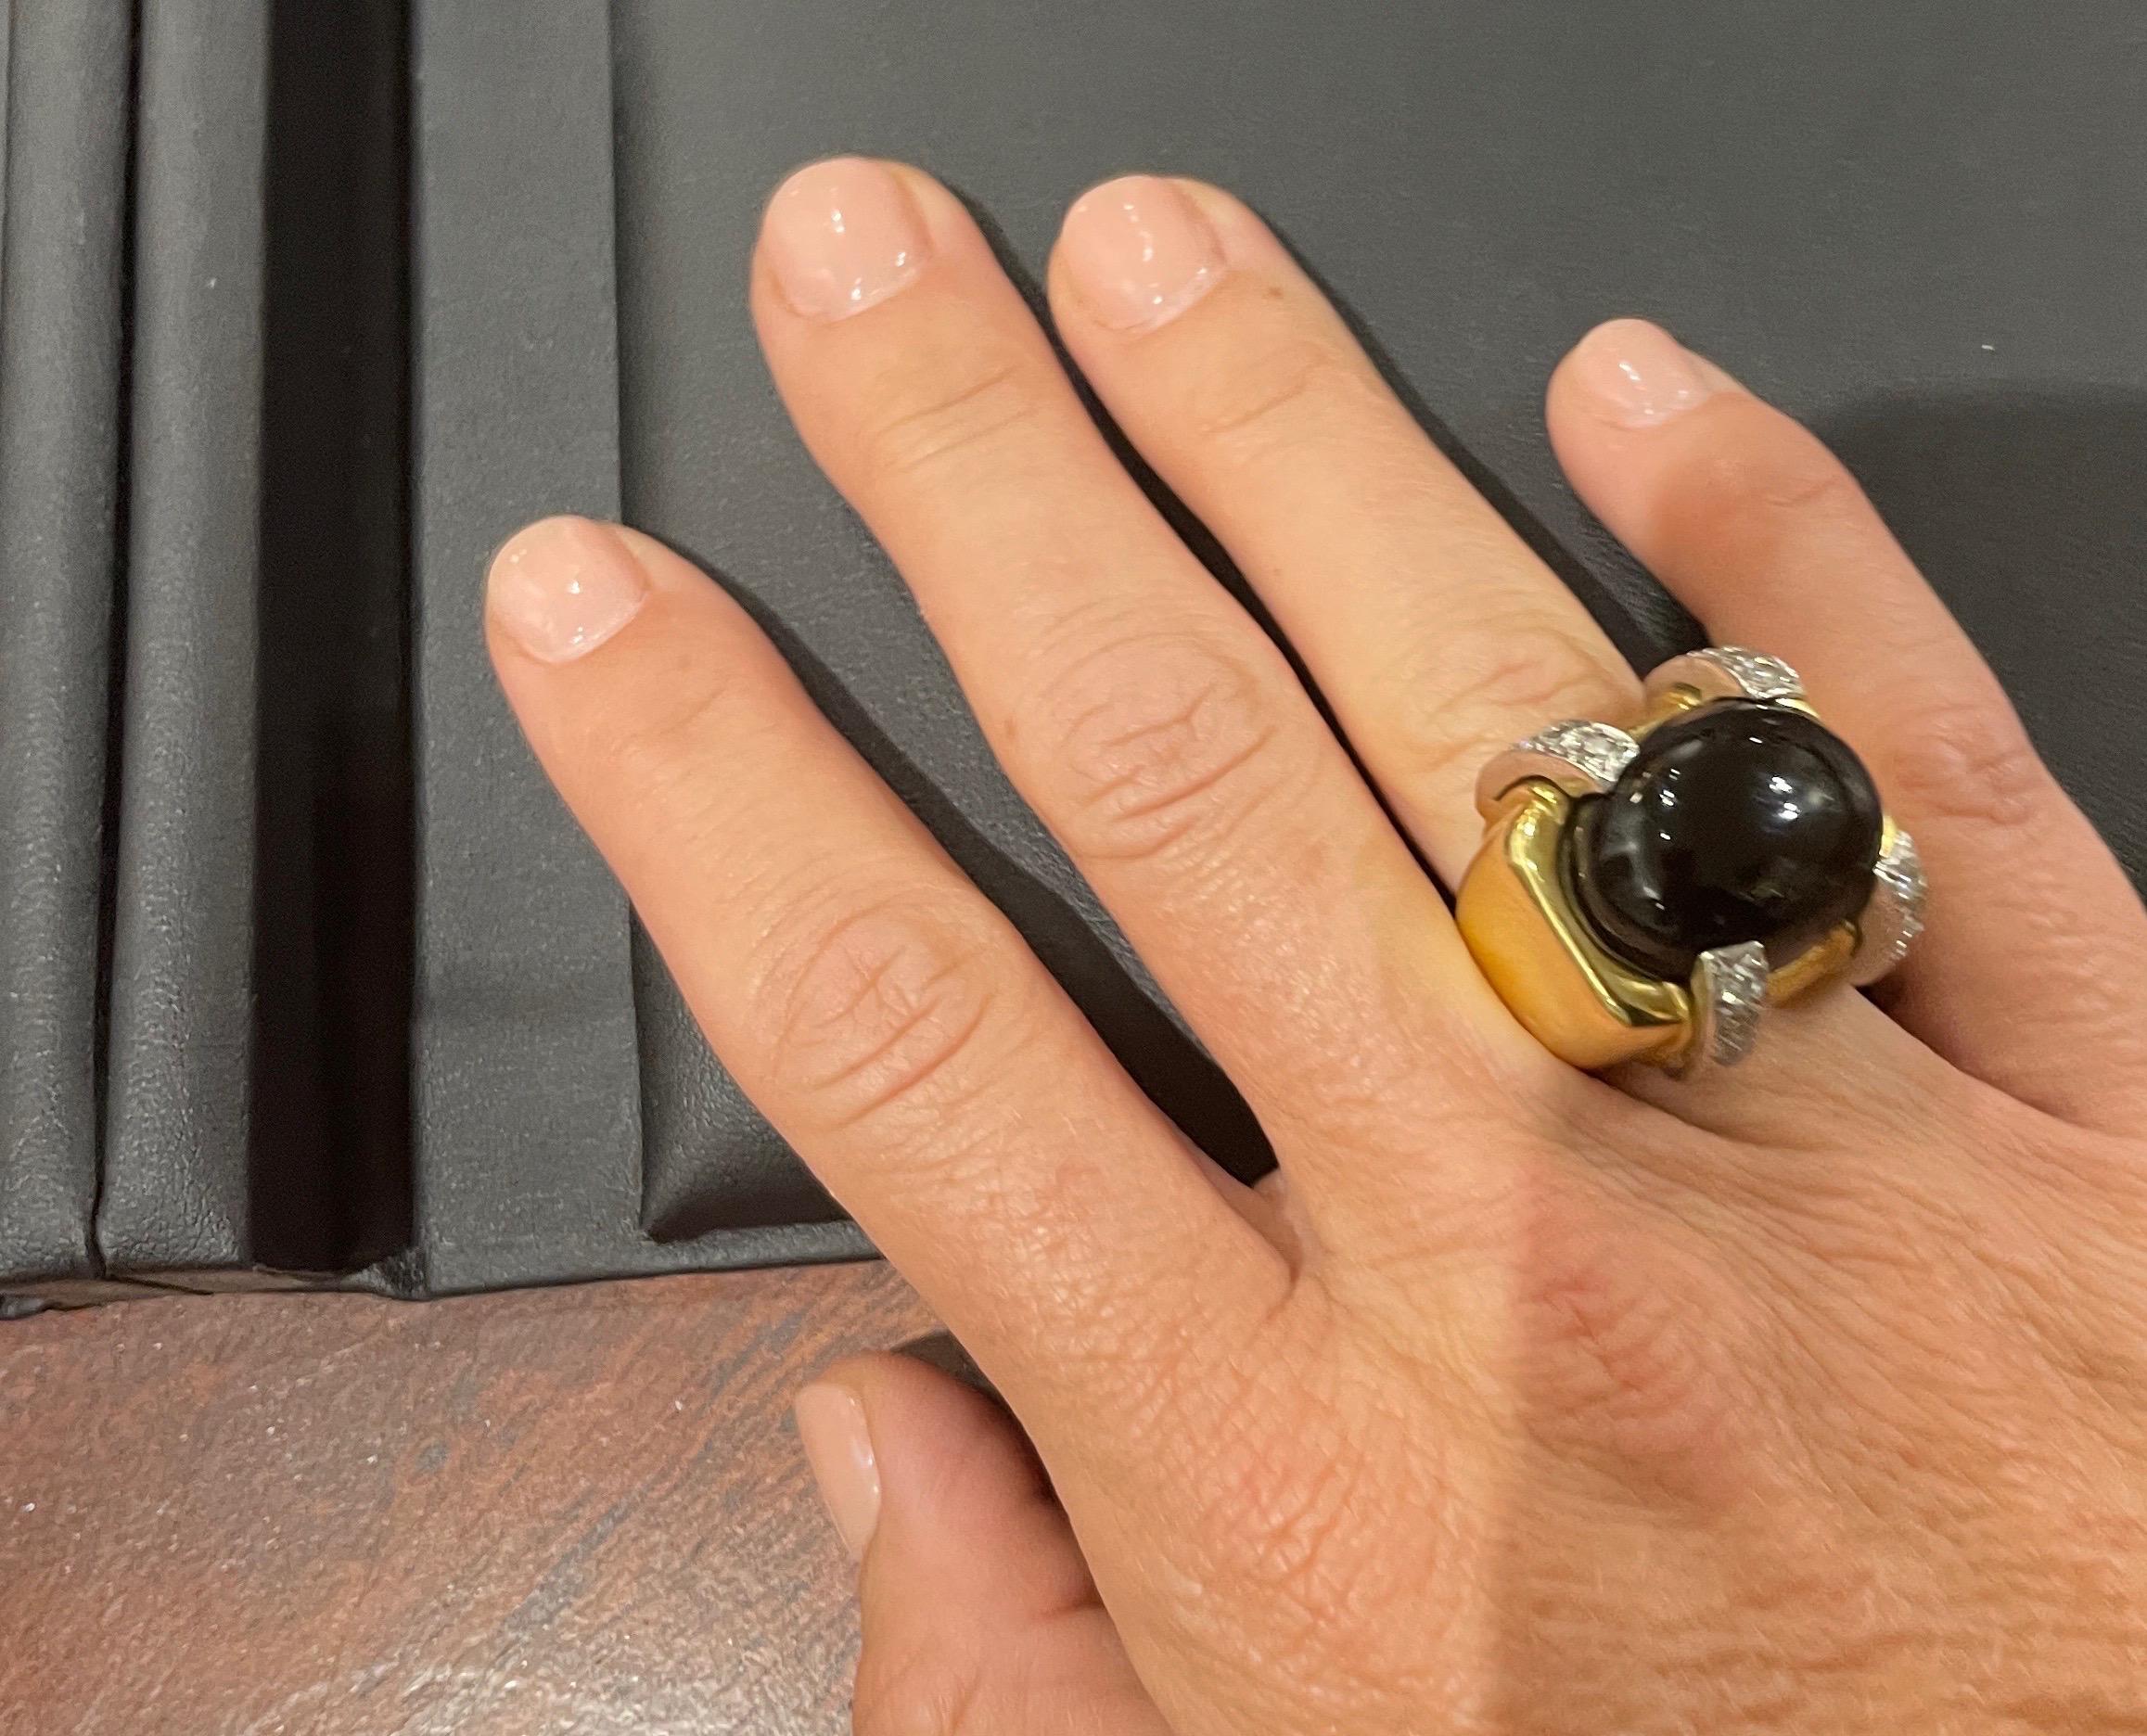 Dans le style de David Webb,  Cette magnifique bague en or jaune 18 carats présente un magnifique onyx noir ovale taillé en cabochon, rehaussé de diamants ronds taillés en brillant pesant environ 0,48 carats au total. La bague est munie d'une bande